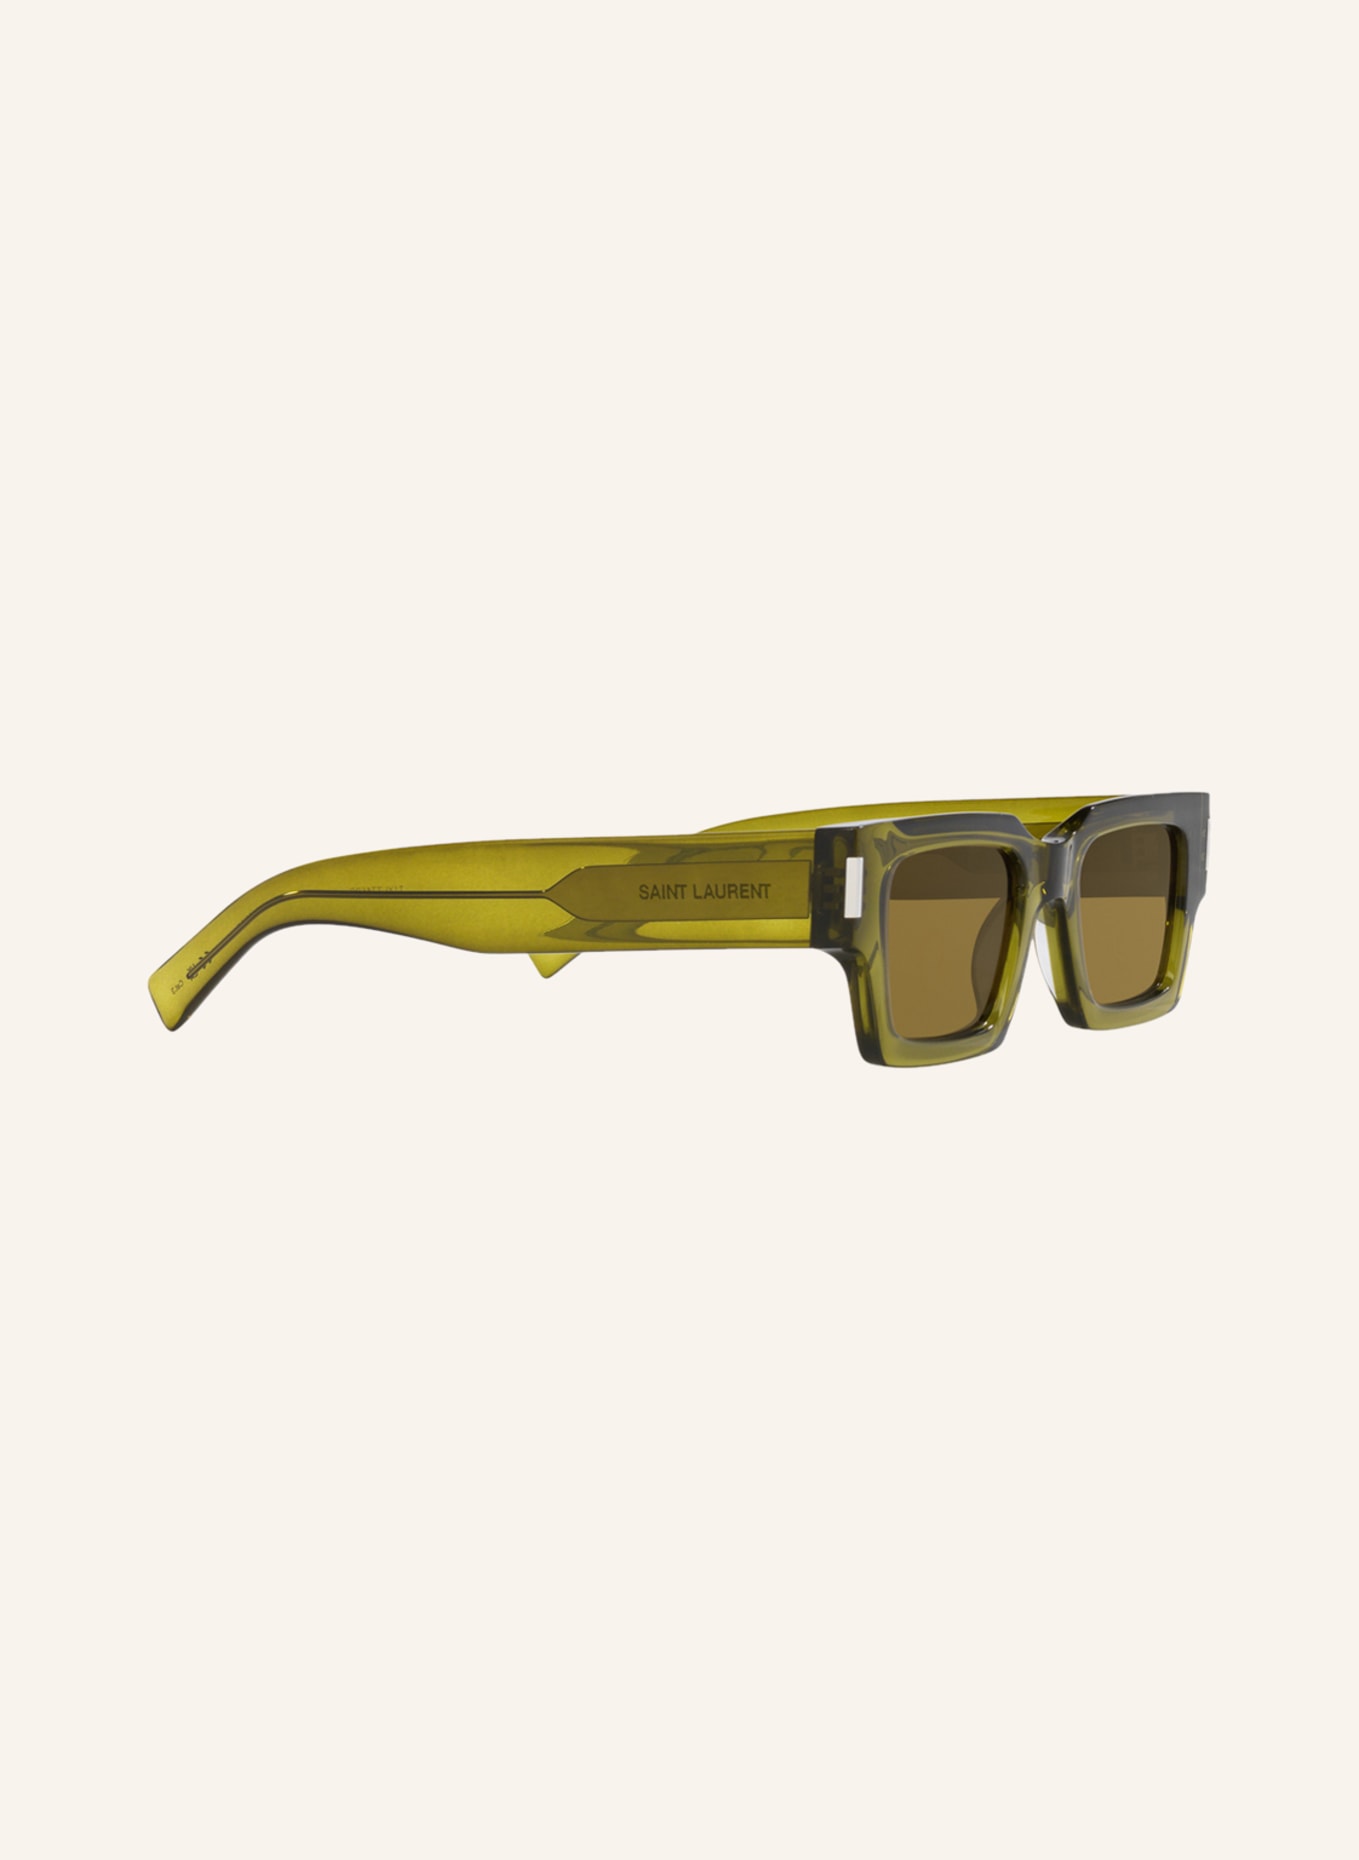 SAINT LAURENT Sunglasses SL572, Color: 2500D1 - OLIVE/ BROWN (Image 3)